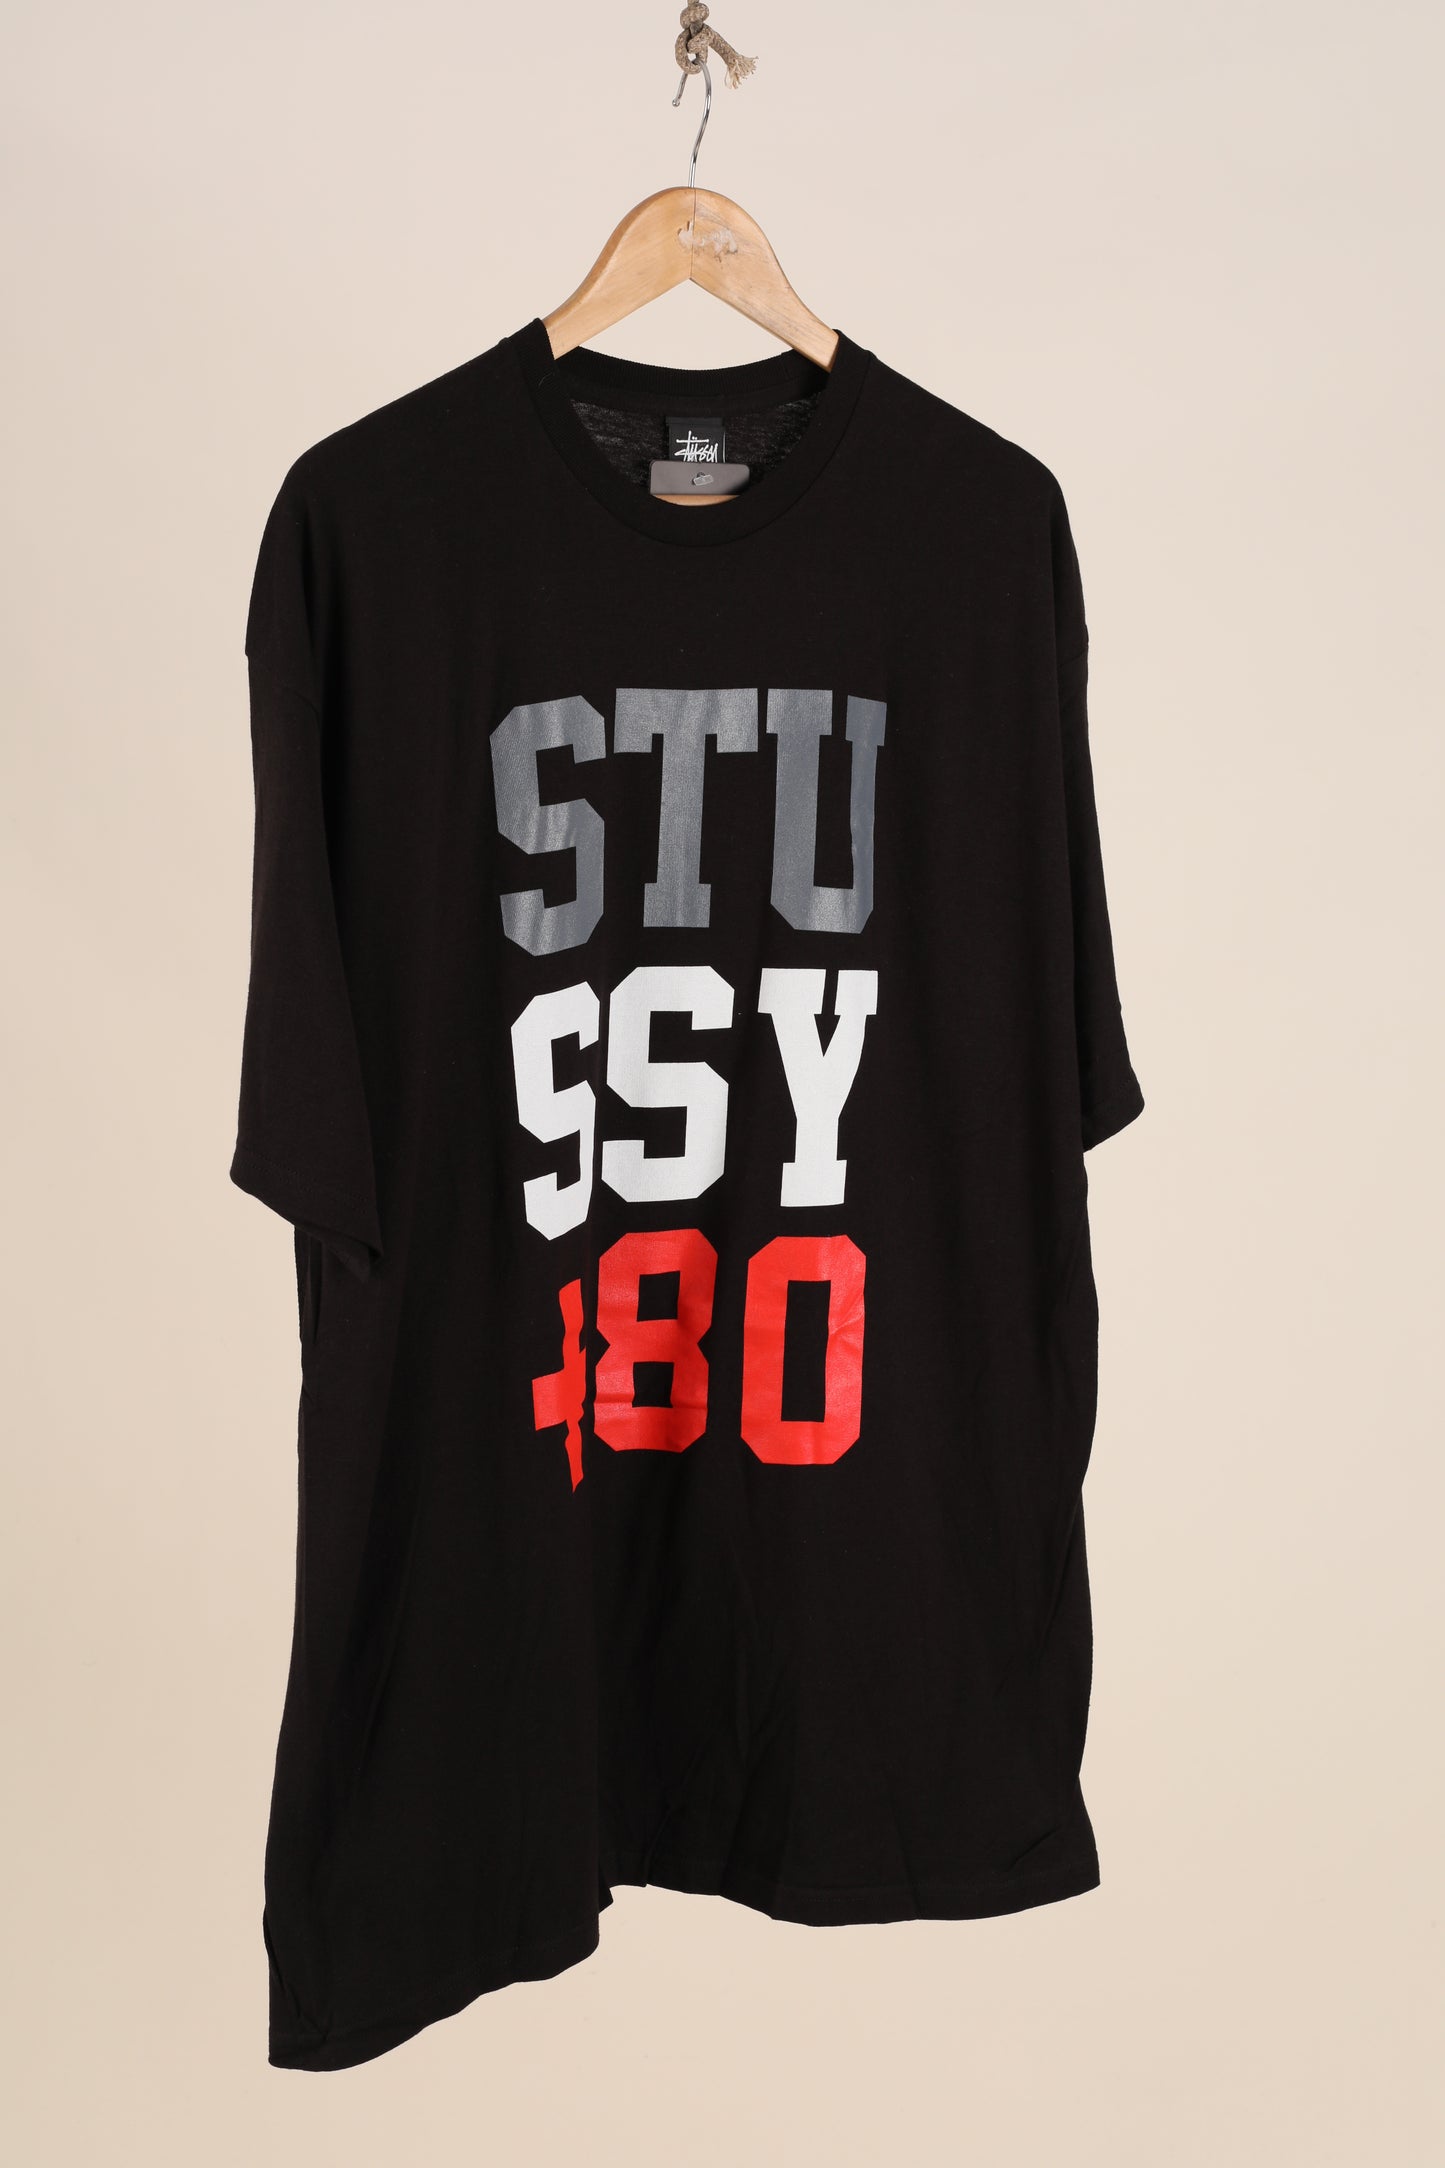 Deadstock Stussy + 80 tee - Black (XL)